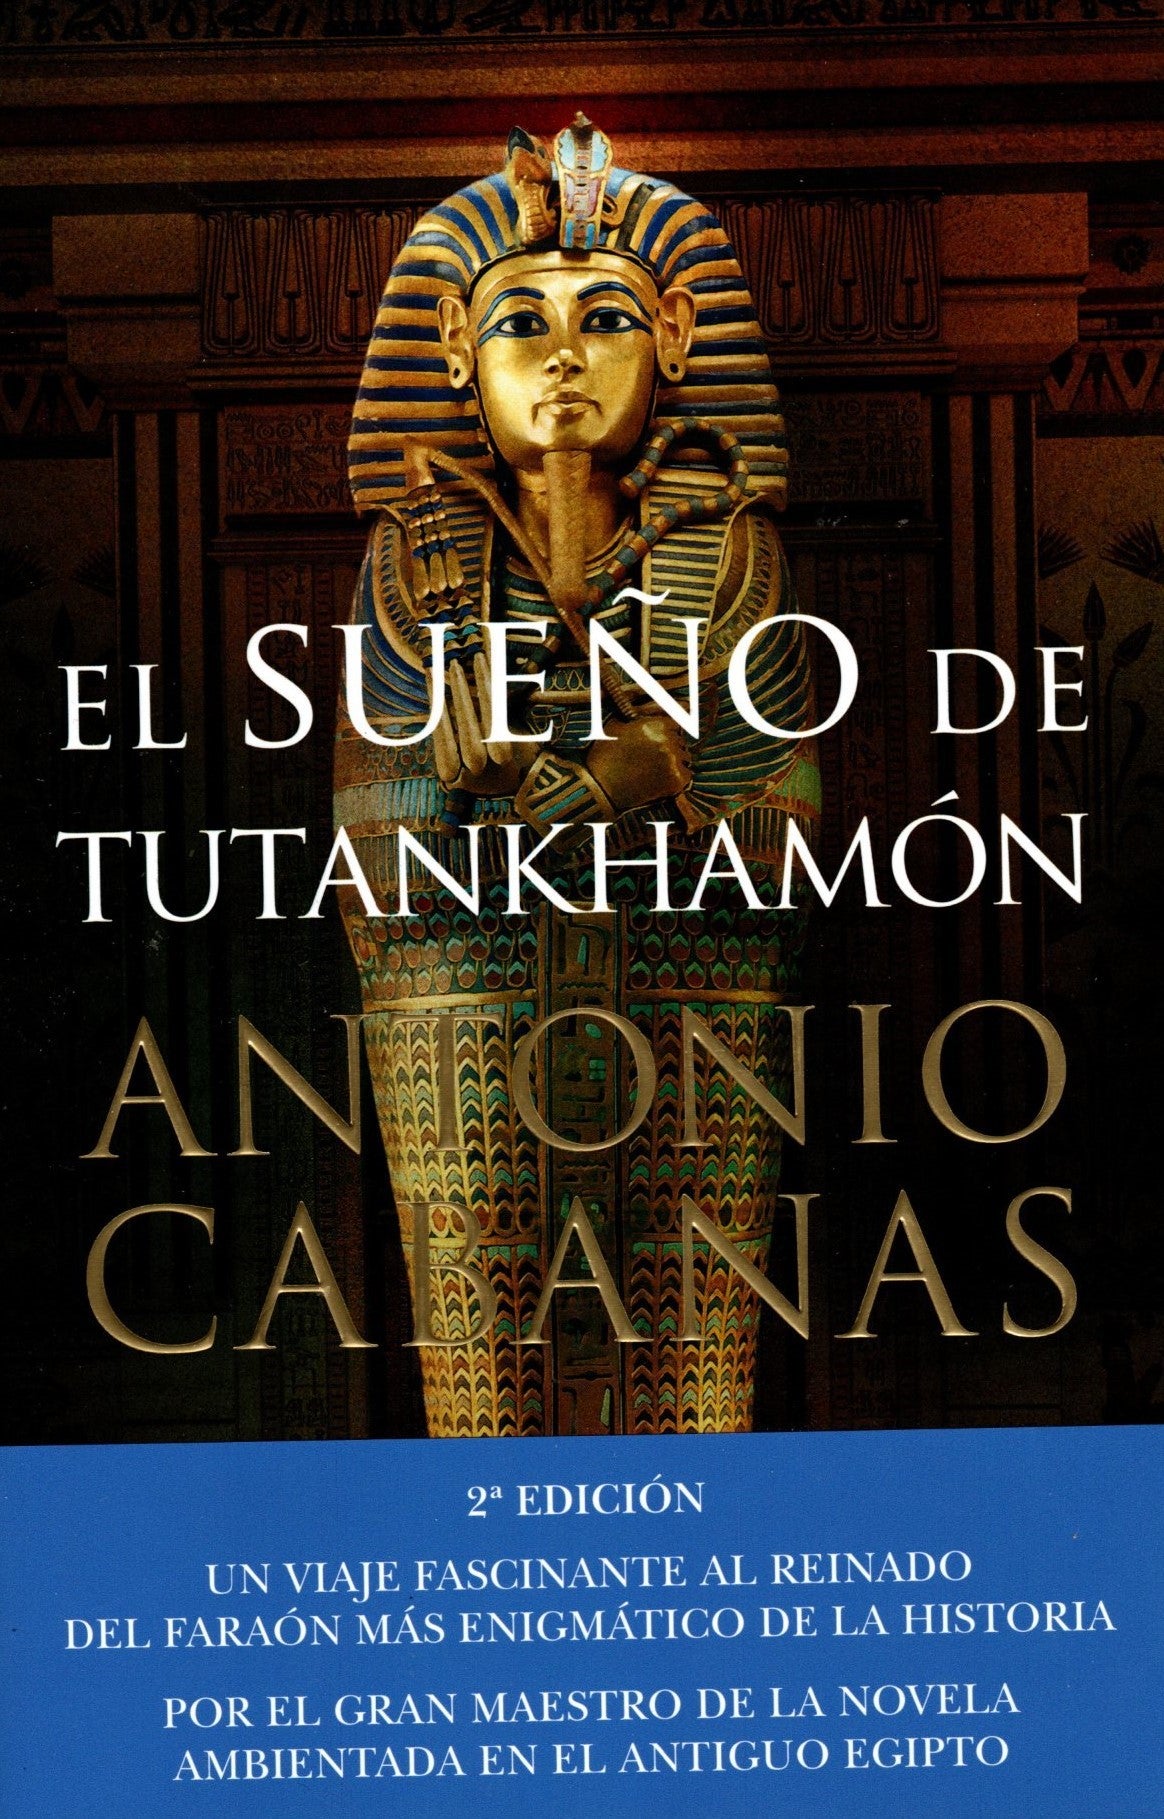 Libro Antonio Cabanas - El sueño de Tutankhamón